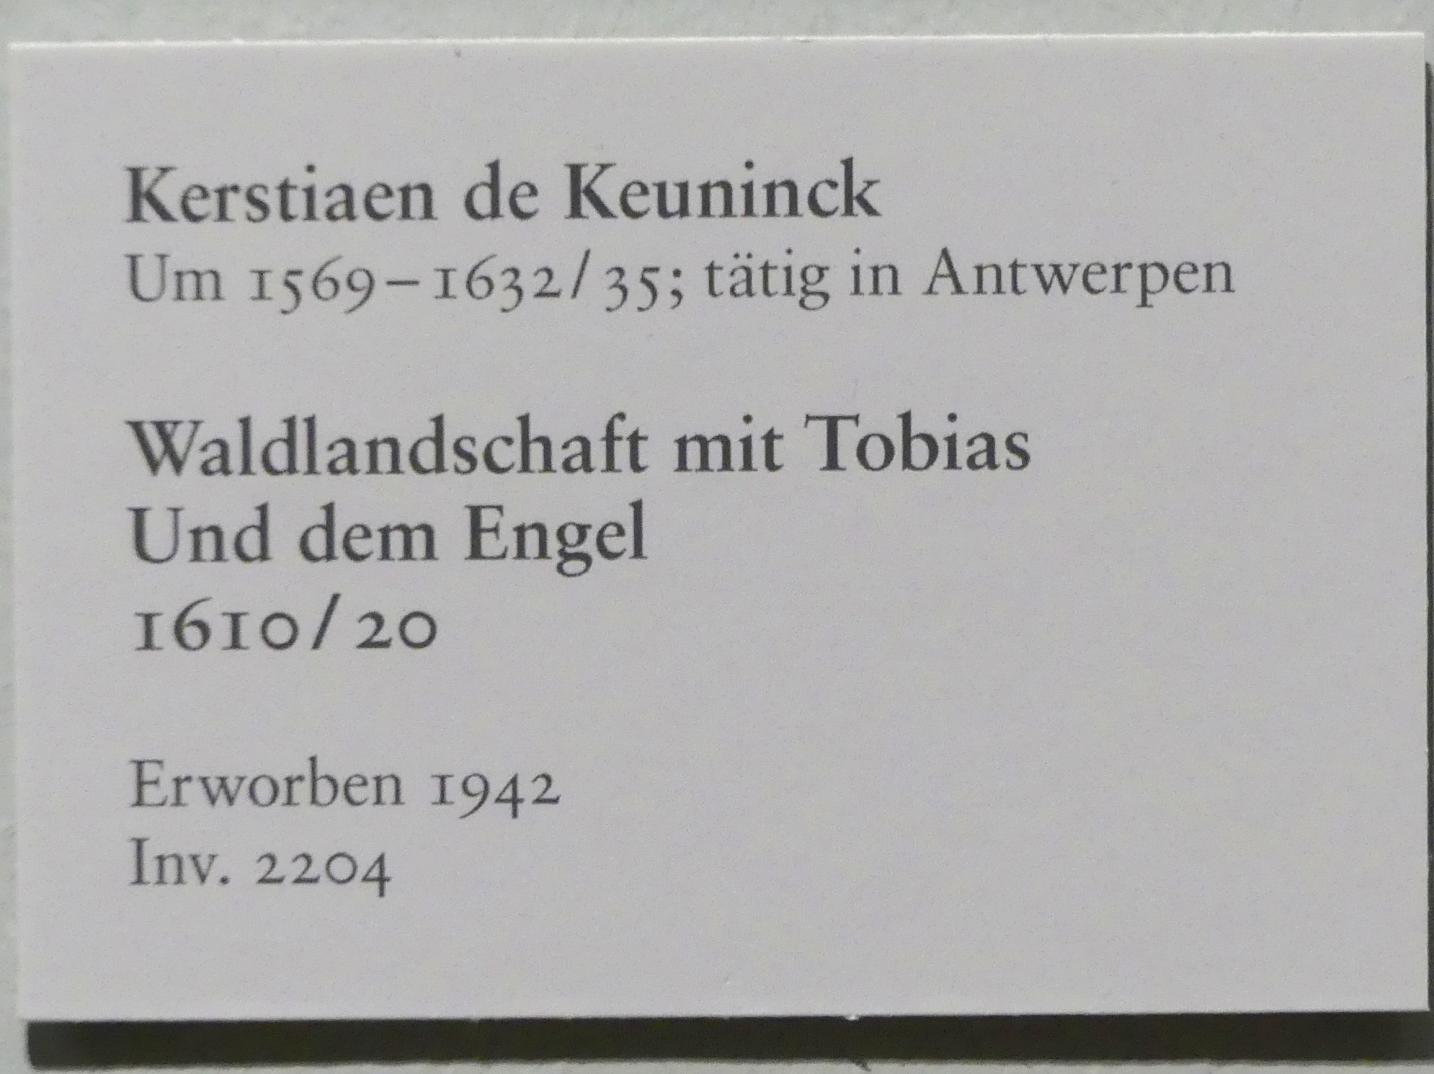 Kerstiaen de Keuninck (1615), Waldlandschaft mit Tobias und dem Engel, Karlsruhe, Staatliche Kunsthalle, Saal 70, 1610–1620, Bild 2/2